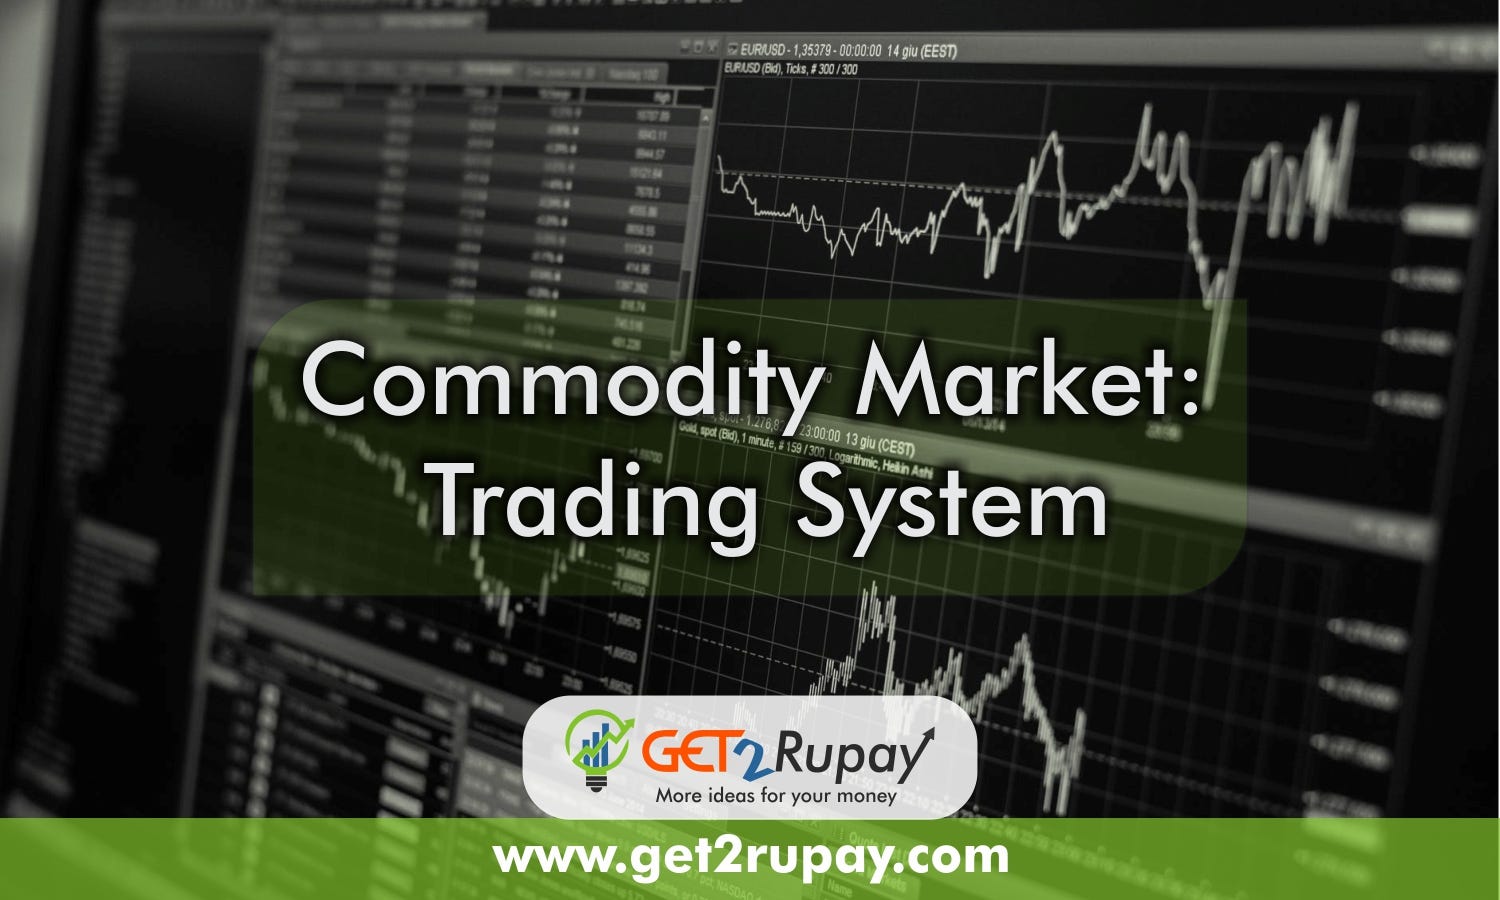 Commodity Market: Trading System - Get2 Rupay - Medium